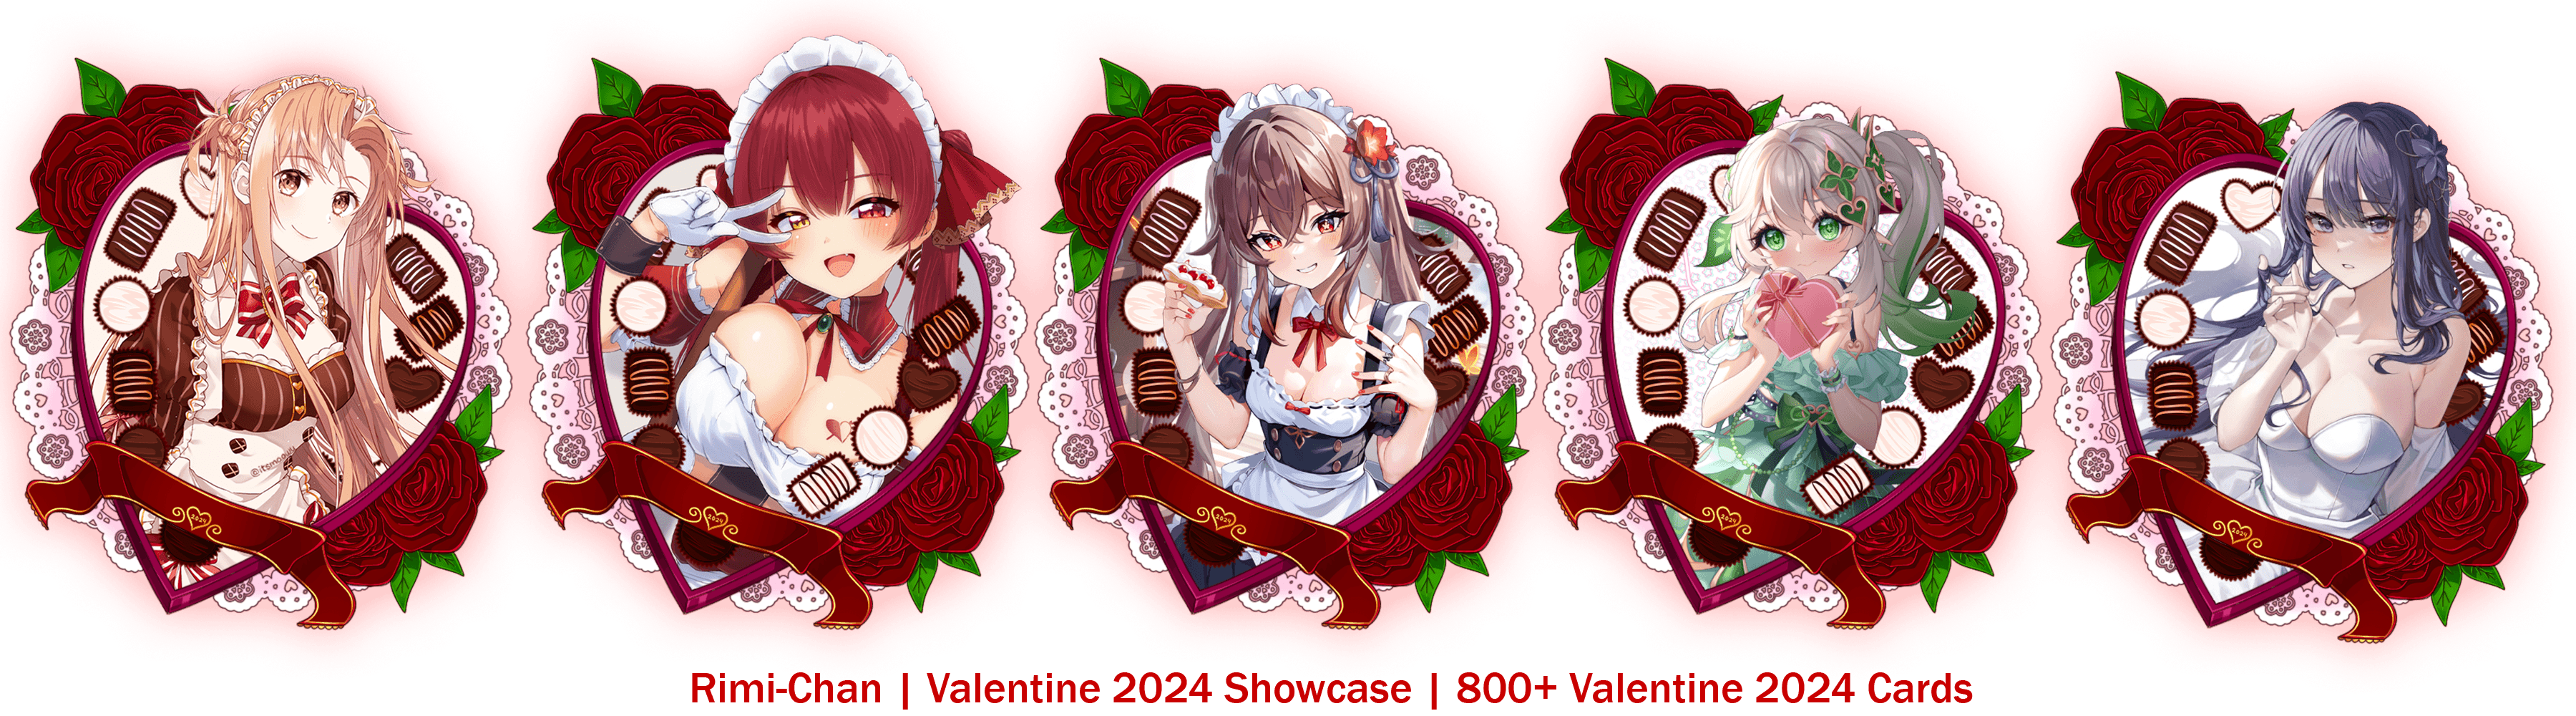 Valentine 2024 Demo